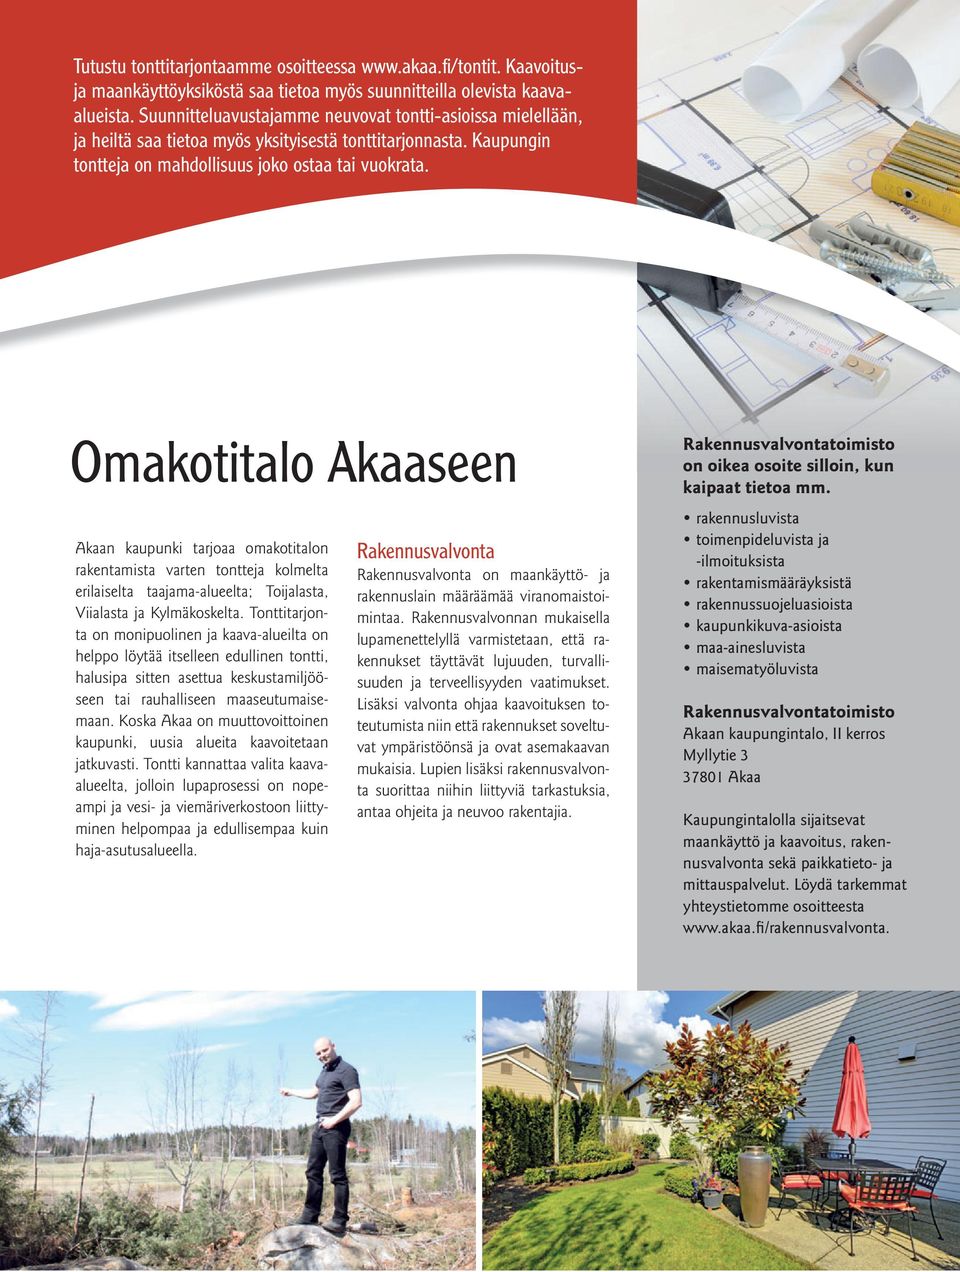 Omakotitalo Akaaseen Akaan kaupunki tarjoaa omakotitalon rakentamista varten tontteja kolmelta erilaiselta taajama-alueelta; Toijalasta, Viialasta ja Kylmäkoskelta.